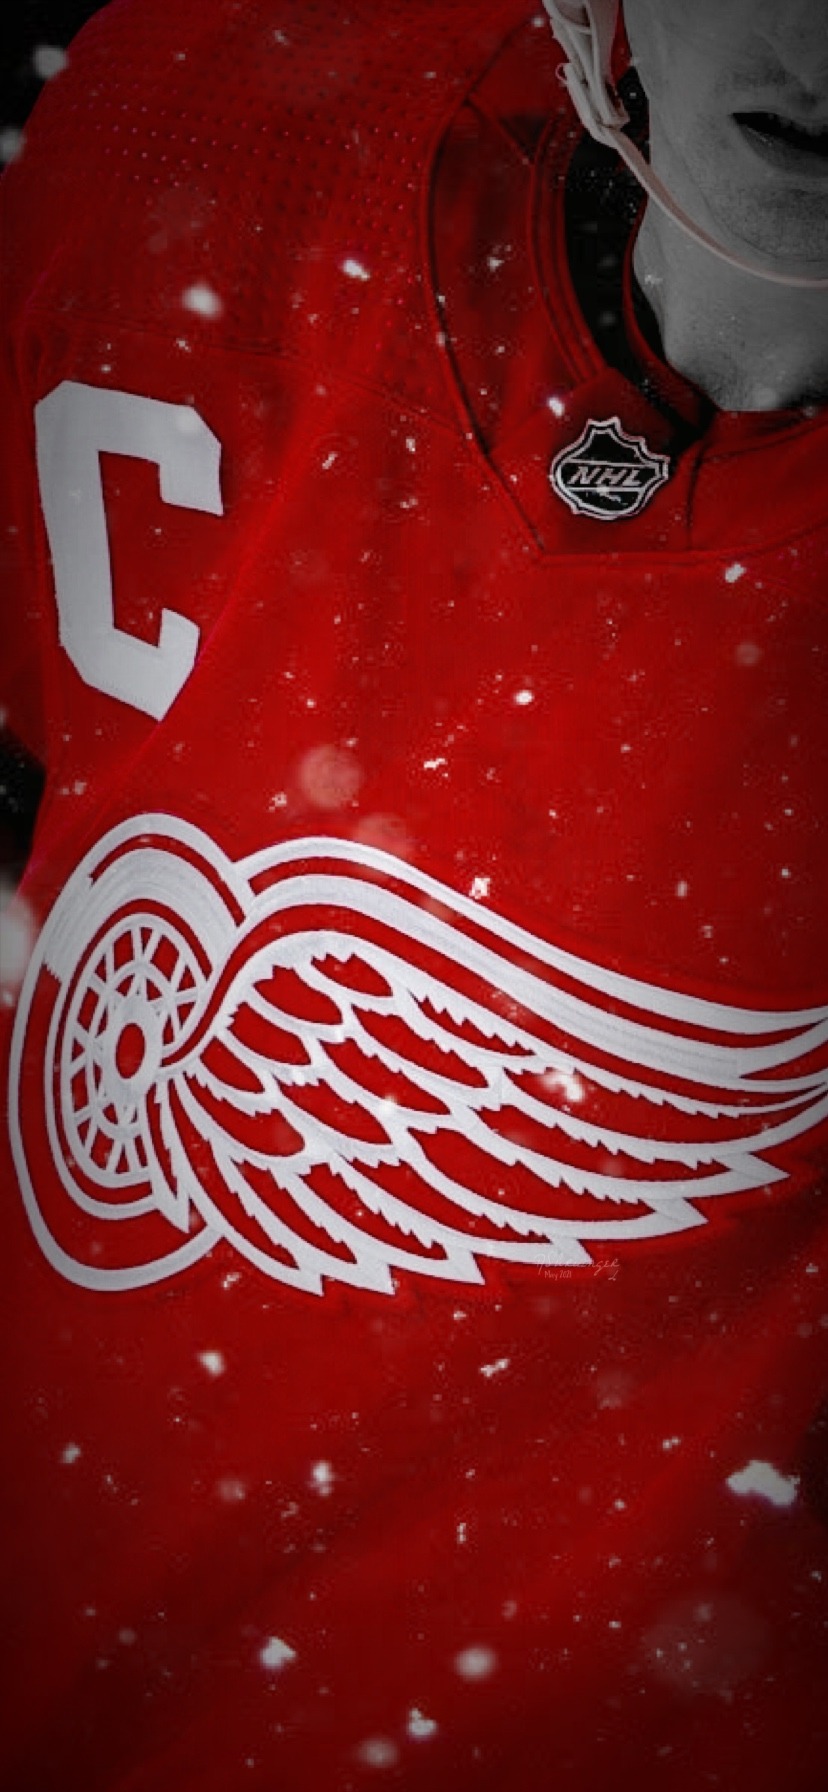 Detroit Red Wings iPhone Wallpaper by Hawk Eyes, via Flickr